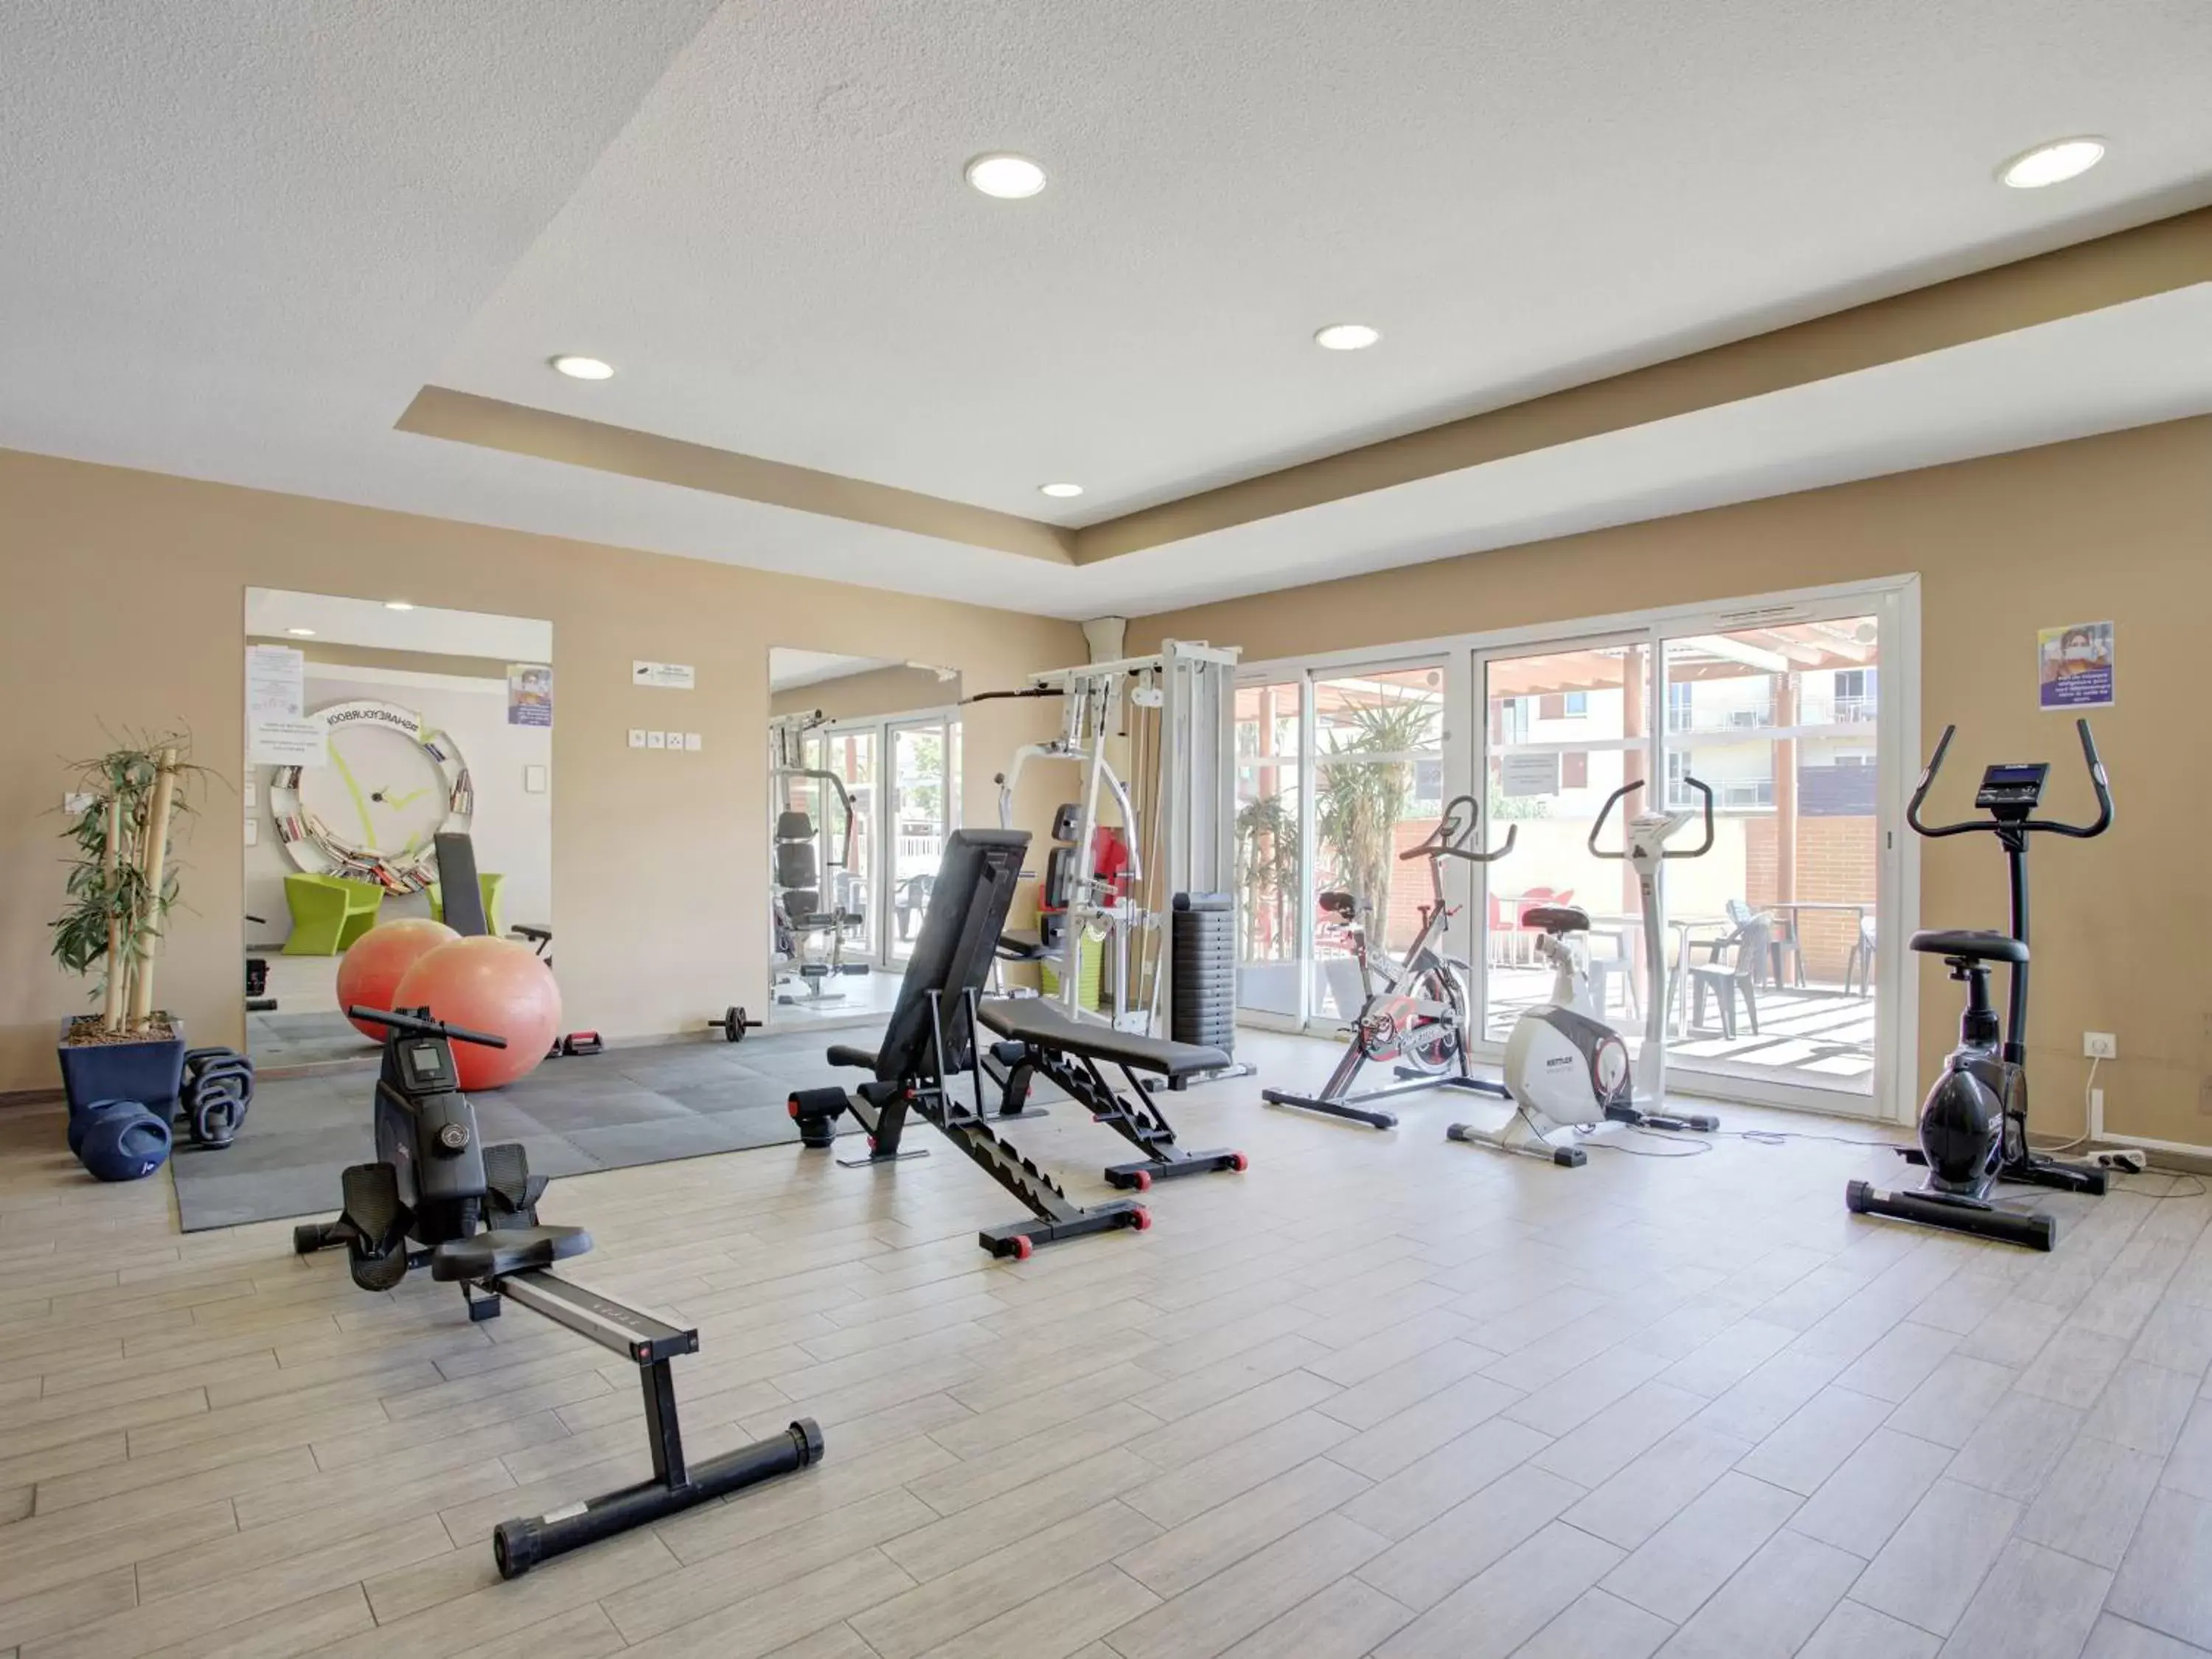 Fitness centre/facilities, Fitness Center/Facilities in Vacancéole - Les demeures de la Massane - Argelès-sur-Mer